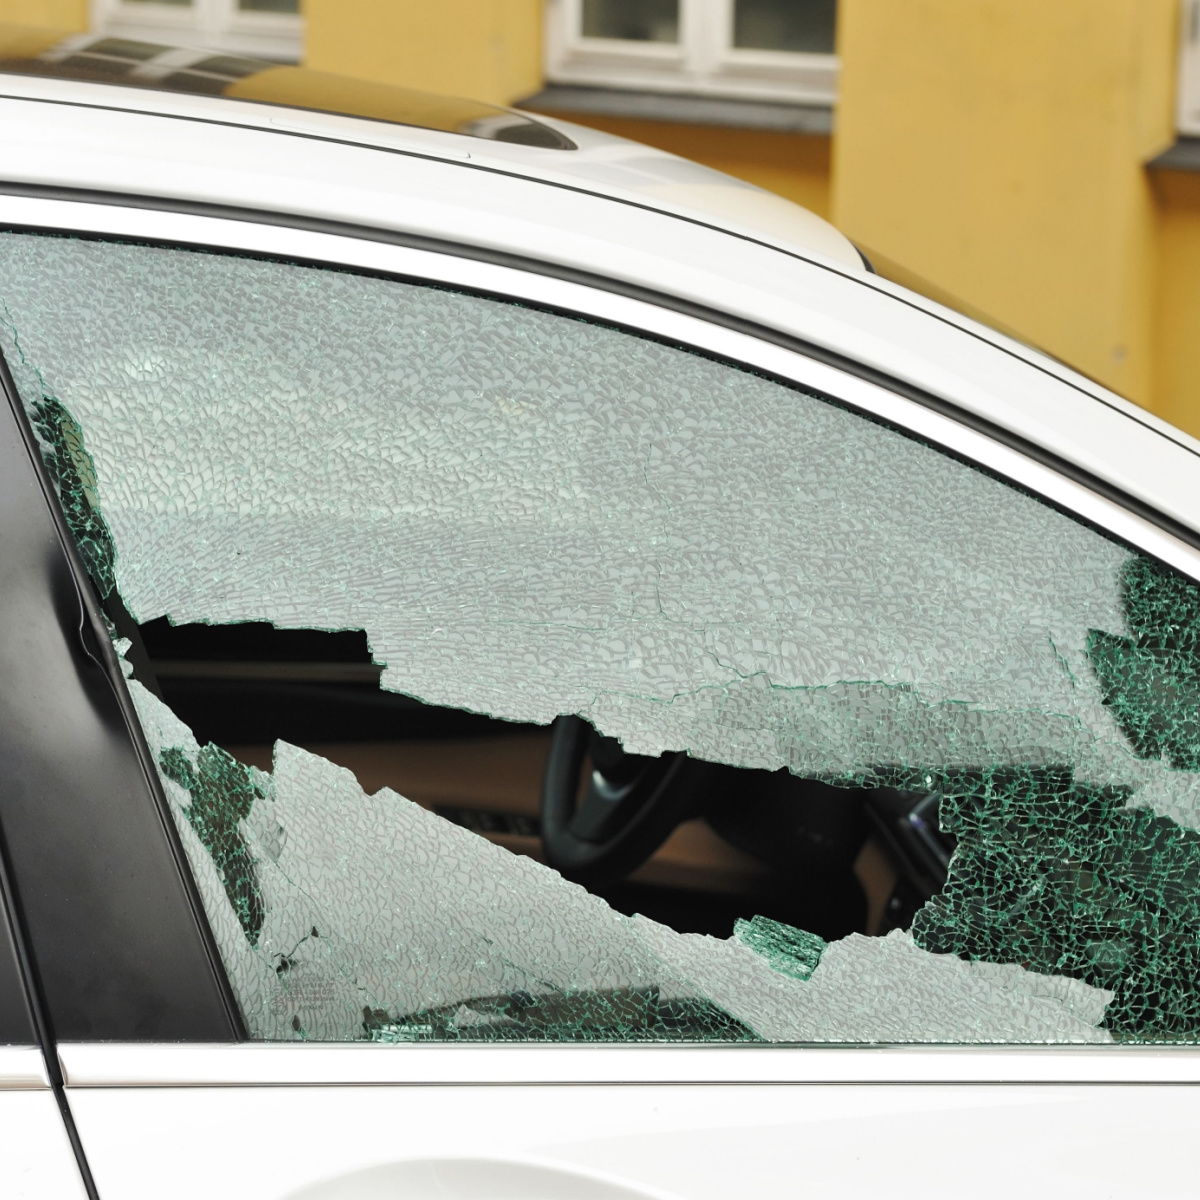 Broken Door Glass? Contact Us for Everyday Auto Window Repair Options!